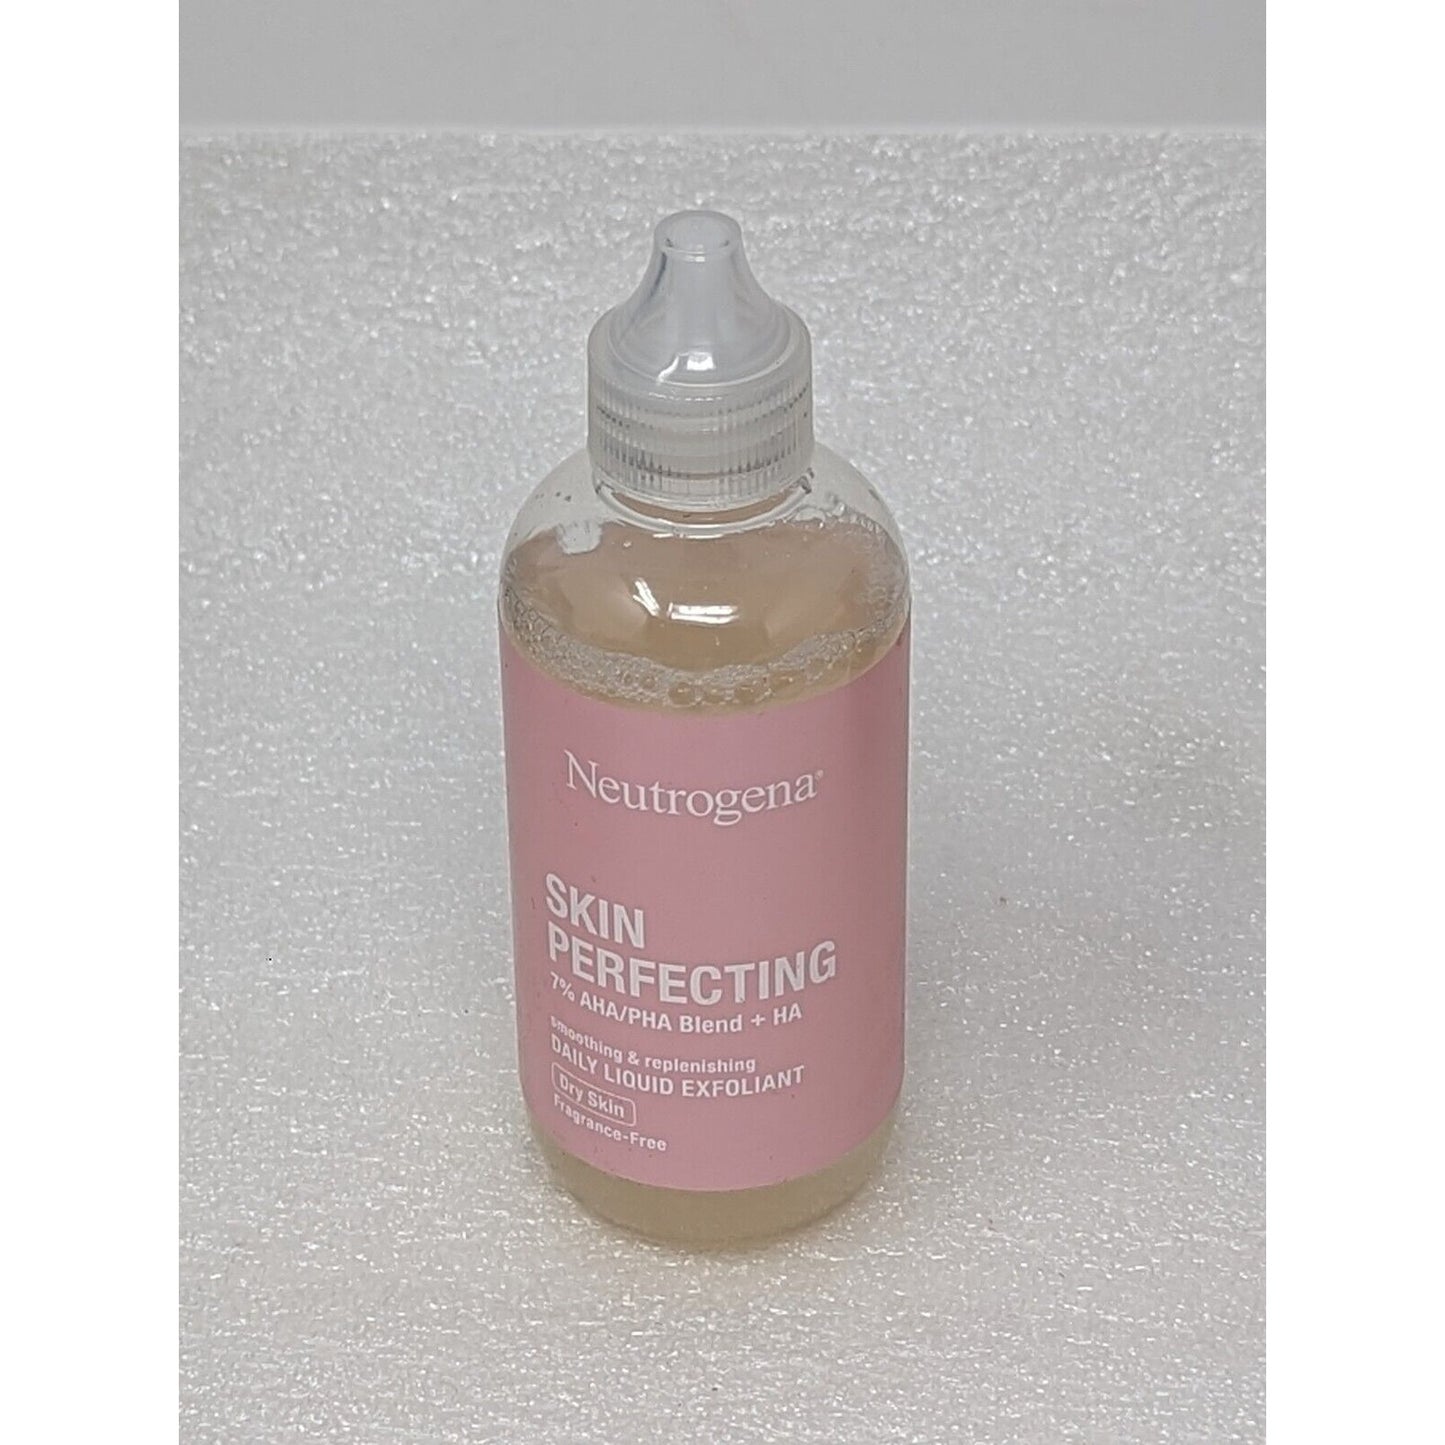 Neutrogena Skin Perfecting Daily Liquid Exfoliant Dry Skin 4 fl oz